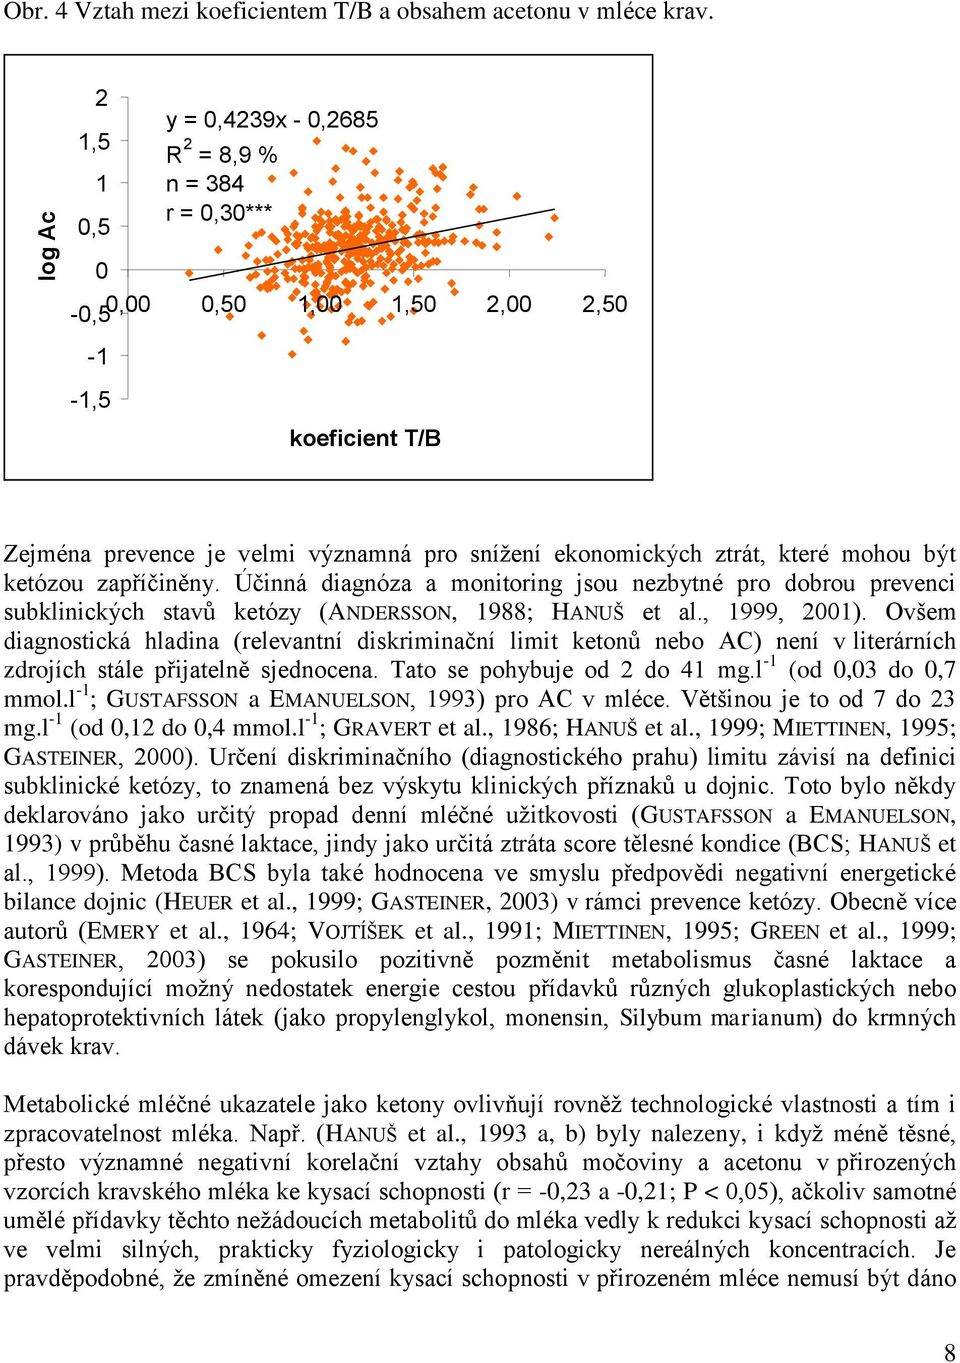 mohou být ketózou zapříčiněny. Účinná diagnóza a monitoring jsou nezbytné pro dobrou prevenci subklinických stavů ketózy (ANDERSSON, 1988; HANUŠ et al., 1999, 2001).